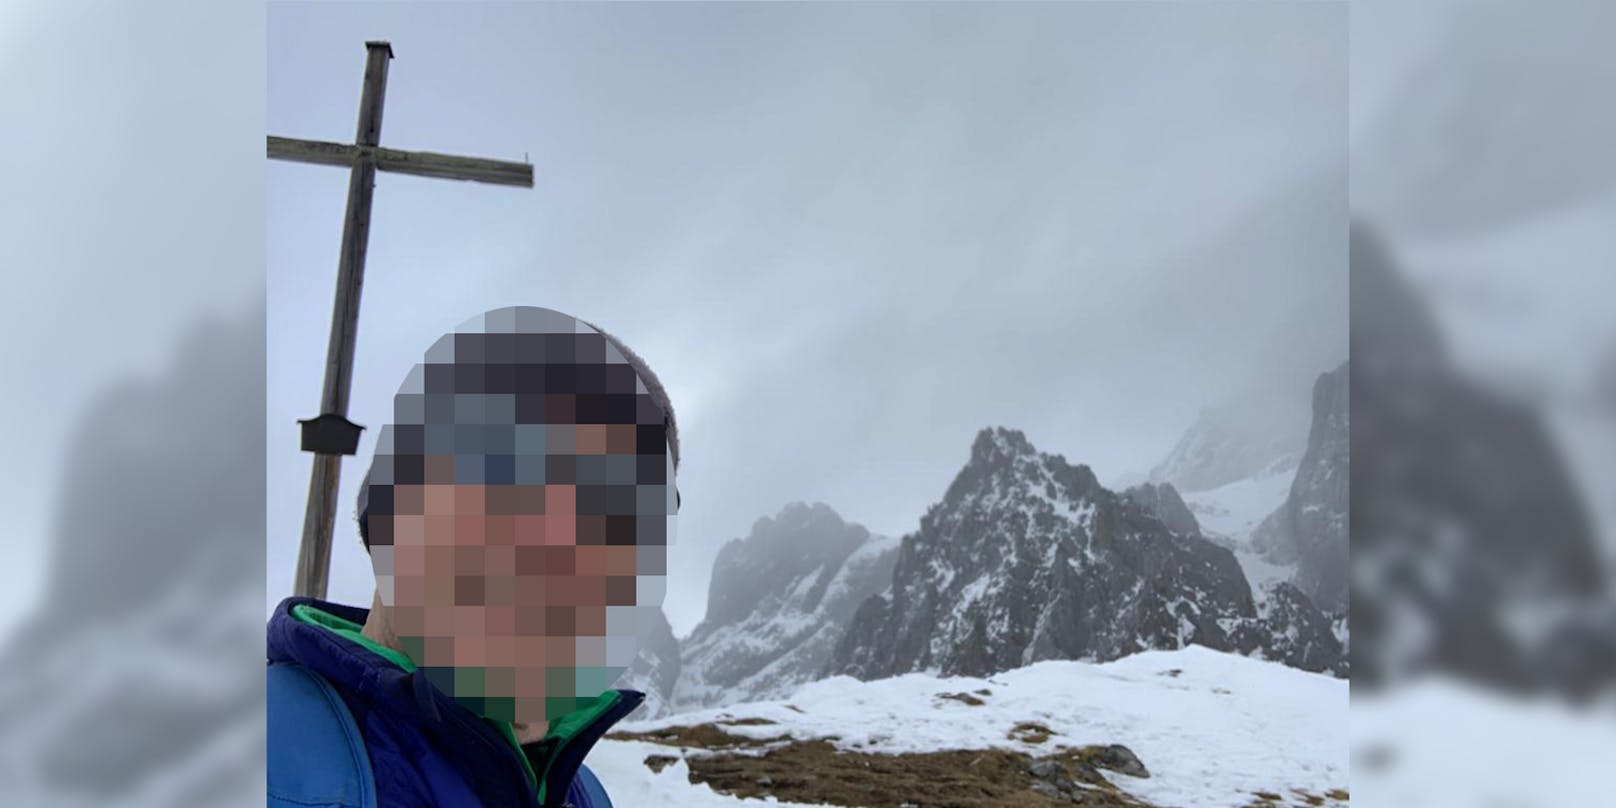 Bergführer und Skilehrer Gerhard <em>(Name von der Redaktion geändert*)</em> kann seinen Beruf derzeit nicht ausüben.